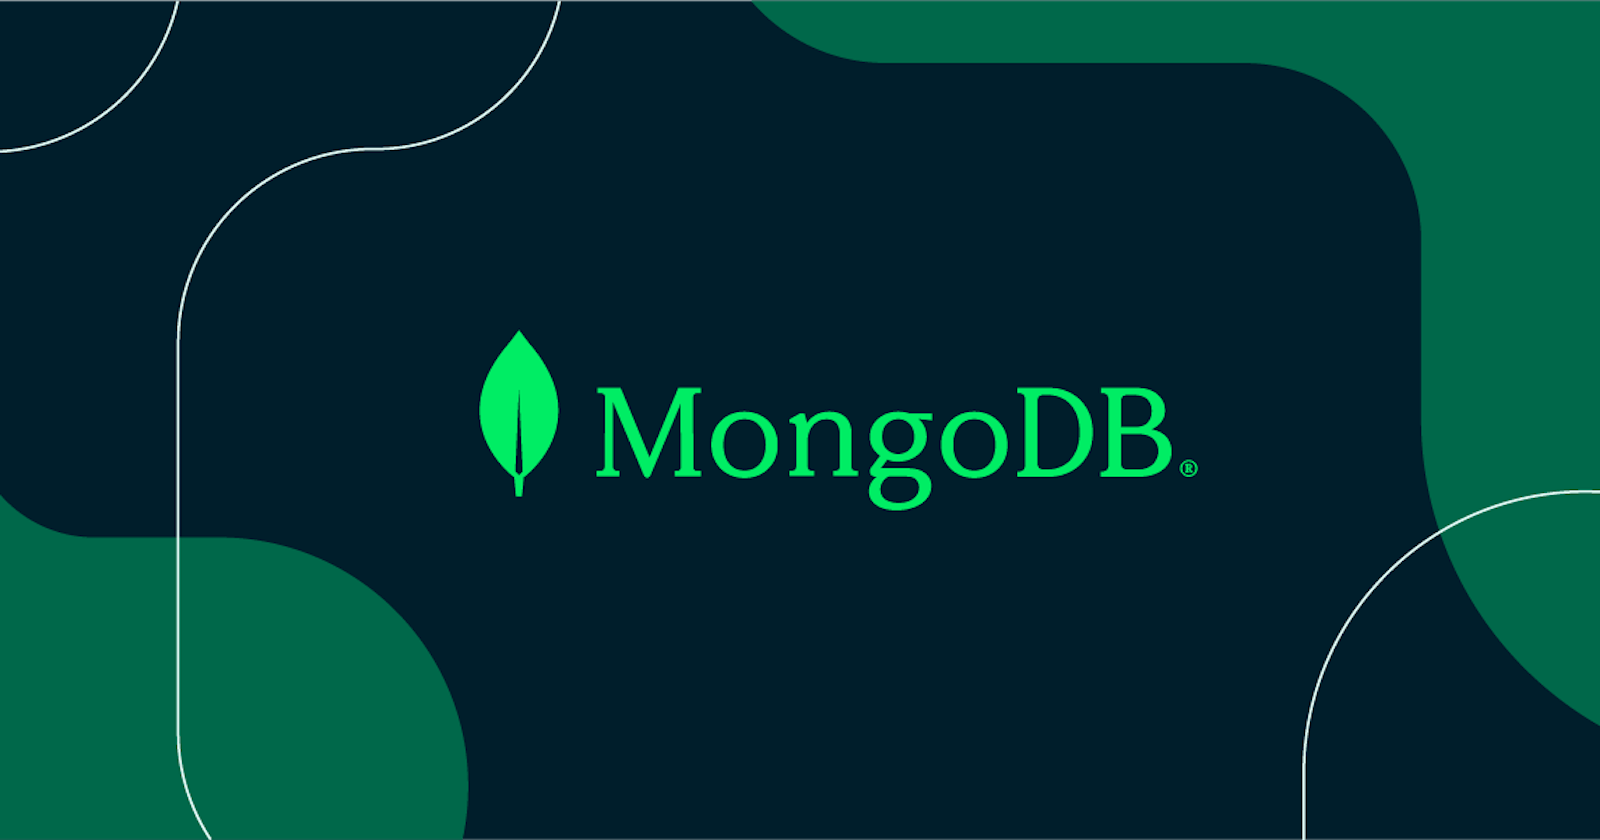 You May Need MongoDB